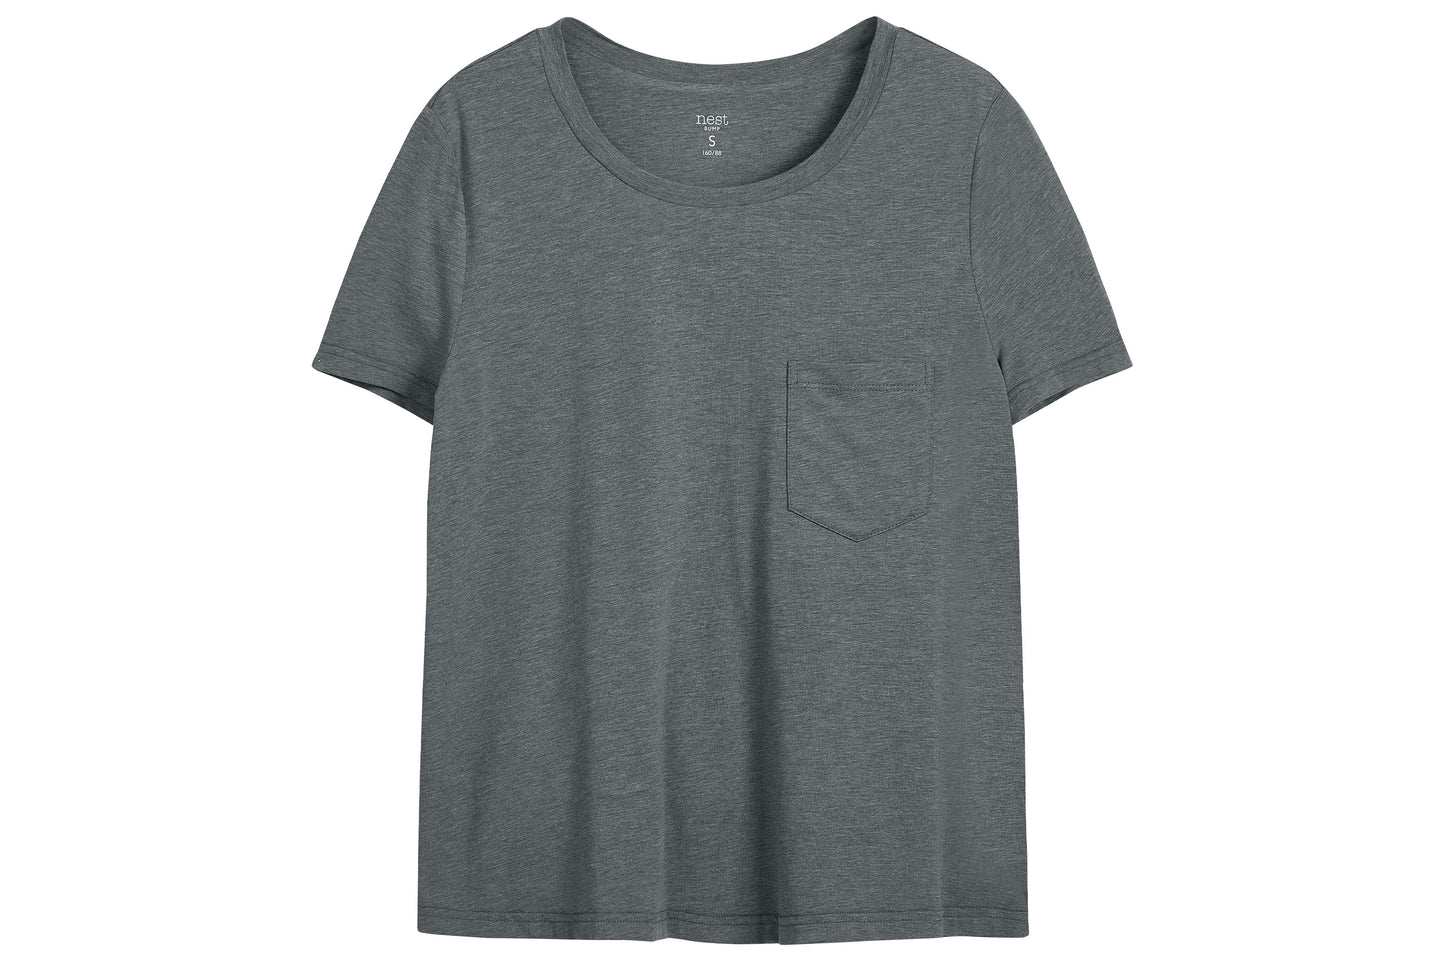 Nest Bump Women's Short Sleeve Nursing T-Shirt (Bamboo) - Charcoal